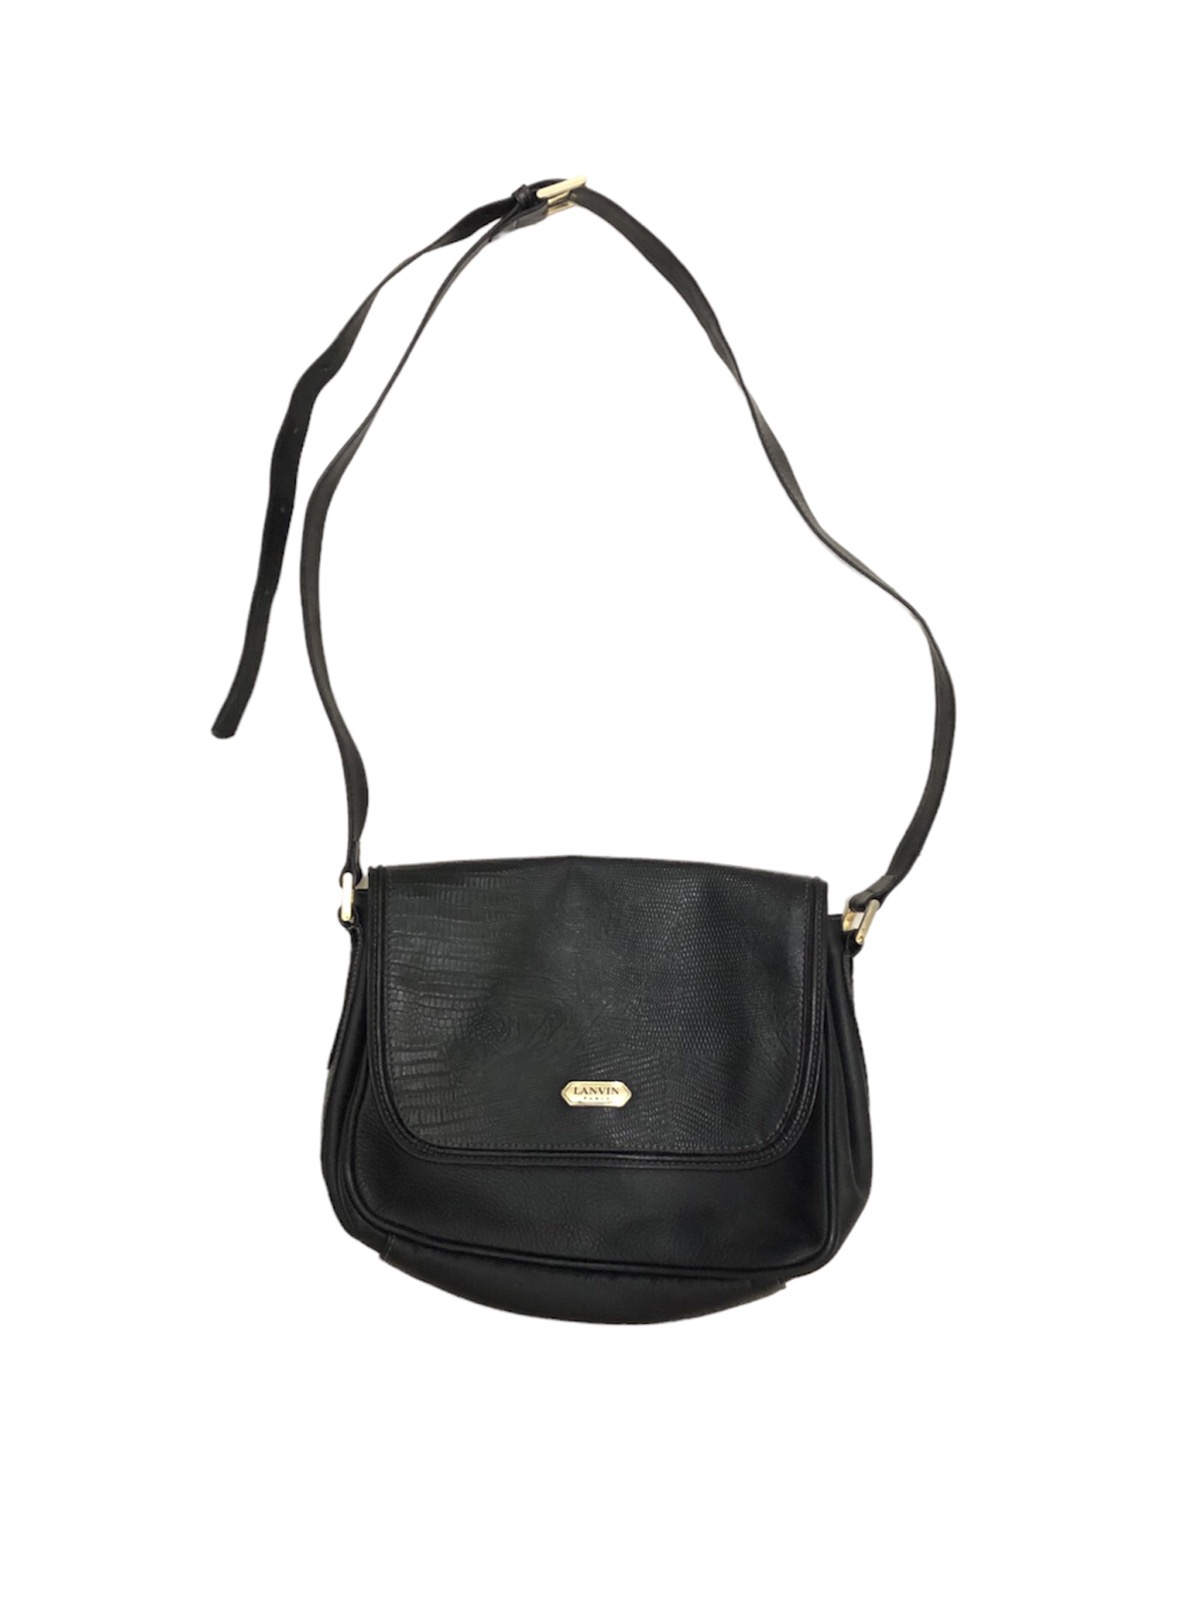 Vintage Lanvin sling bag - 1